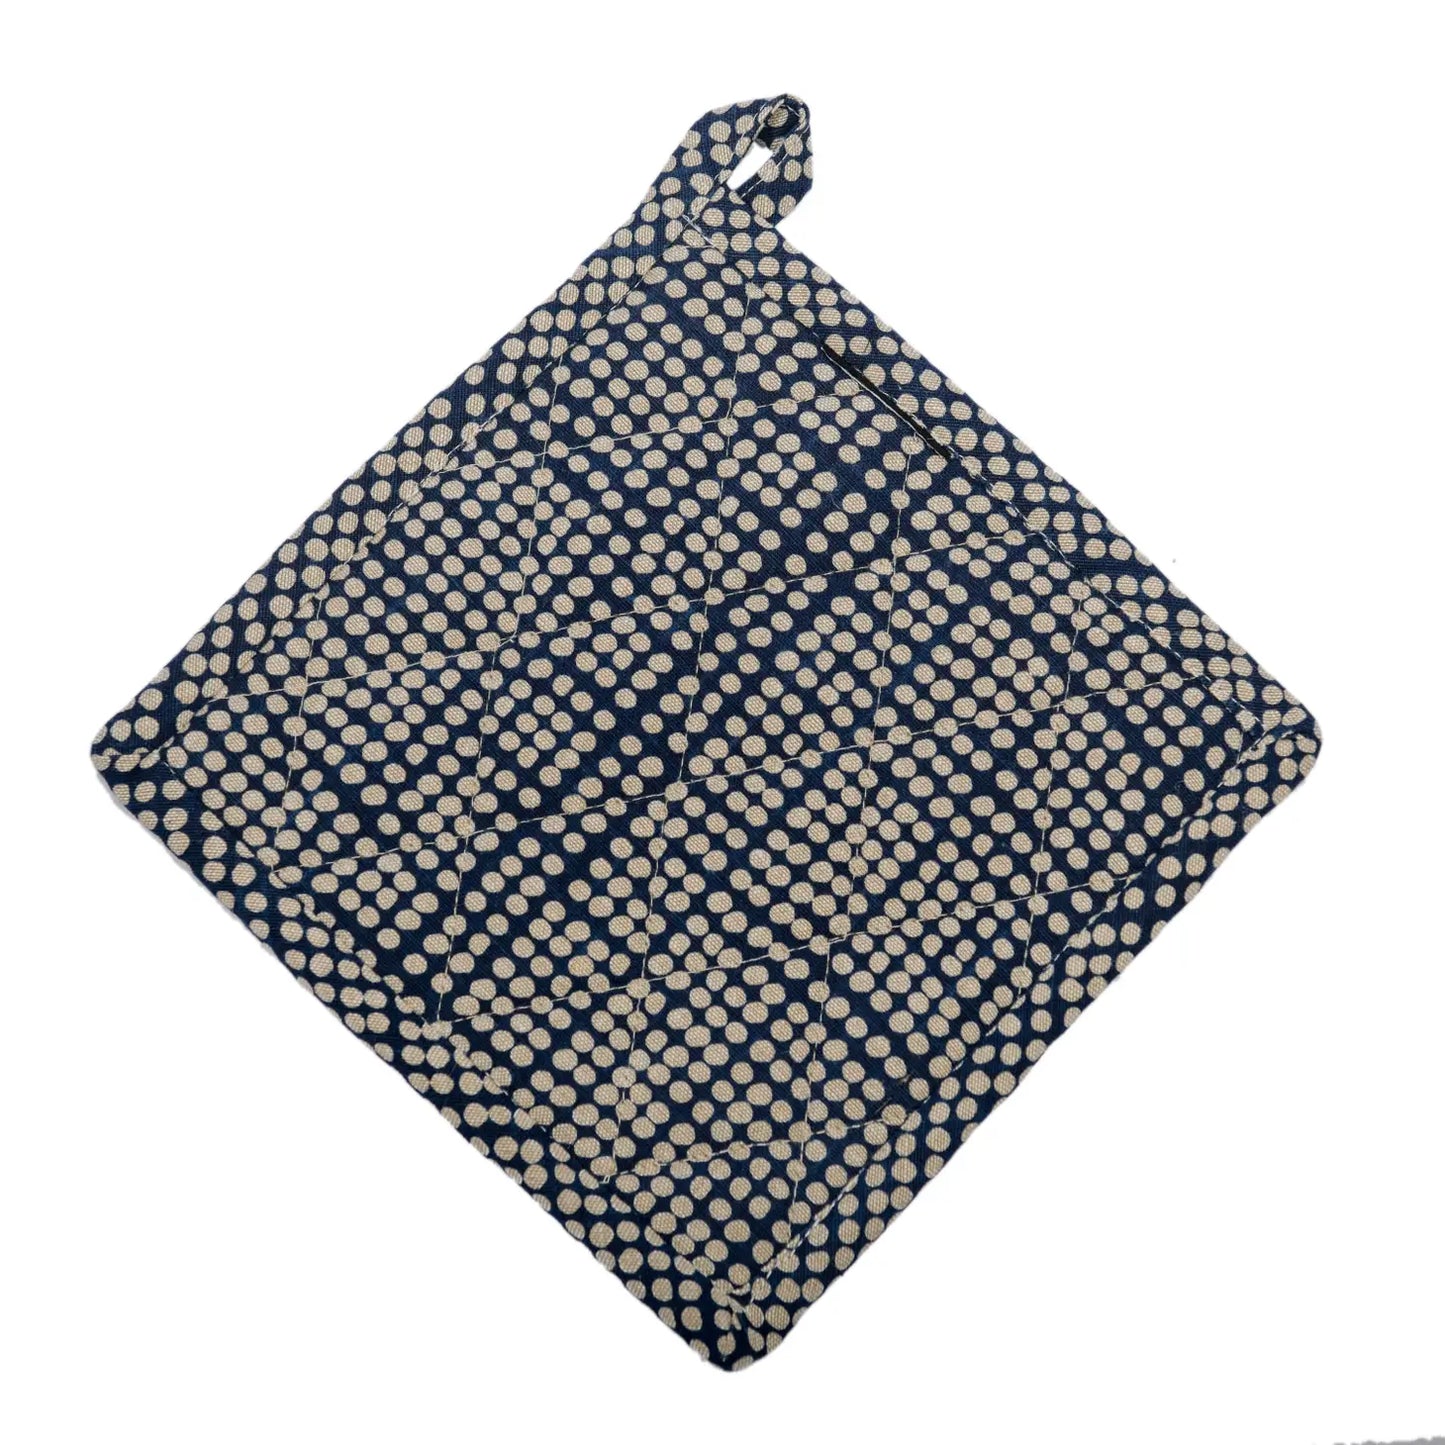 Chicken design cotton trivet or pot holder. Blue towels set of three stripe, gingham